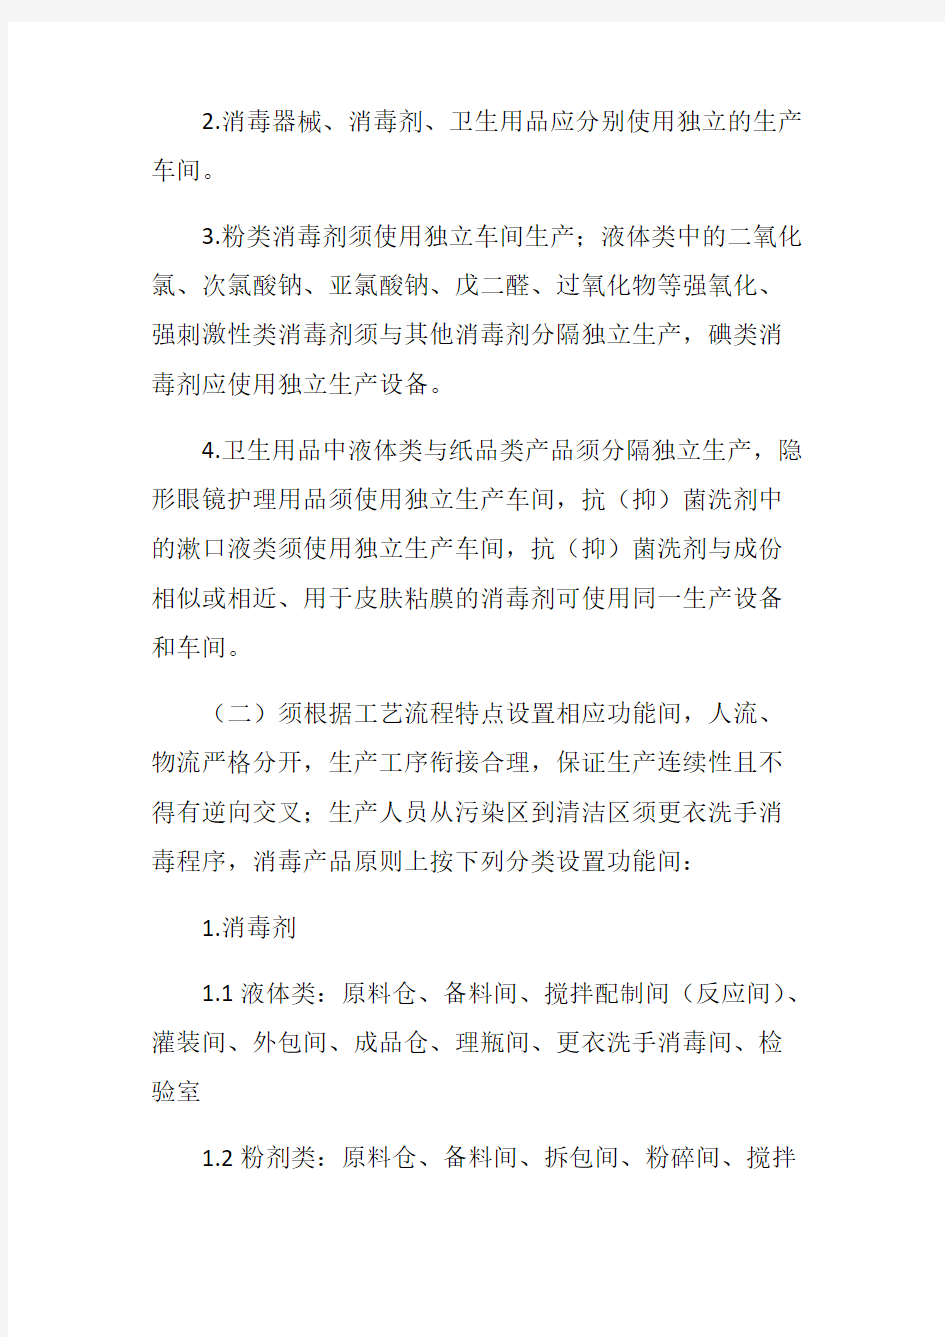 广东省消毒产品生产企业卫生许可现场审核工作指引